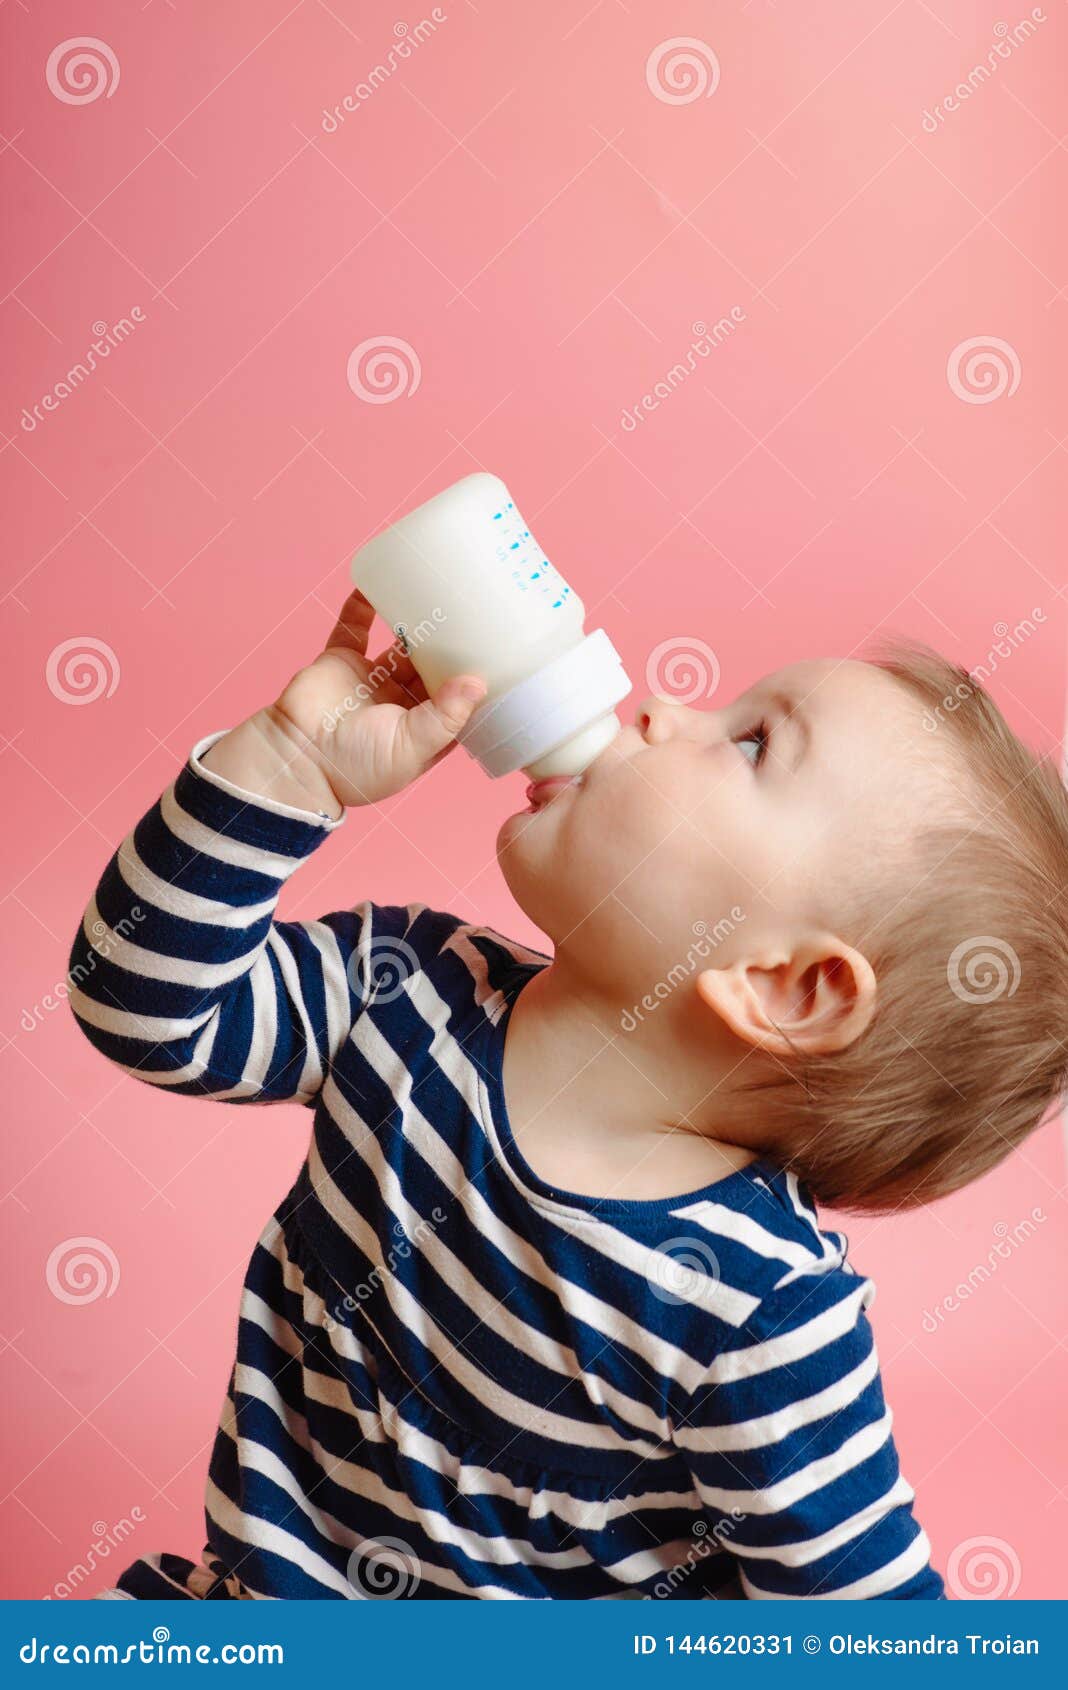 Дети пьют из бутылки. Малыш пьет из бутылочки. Малыш молоко. Малыш пьет молоко. Малышей которые пьют из бутылочки.